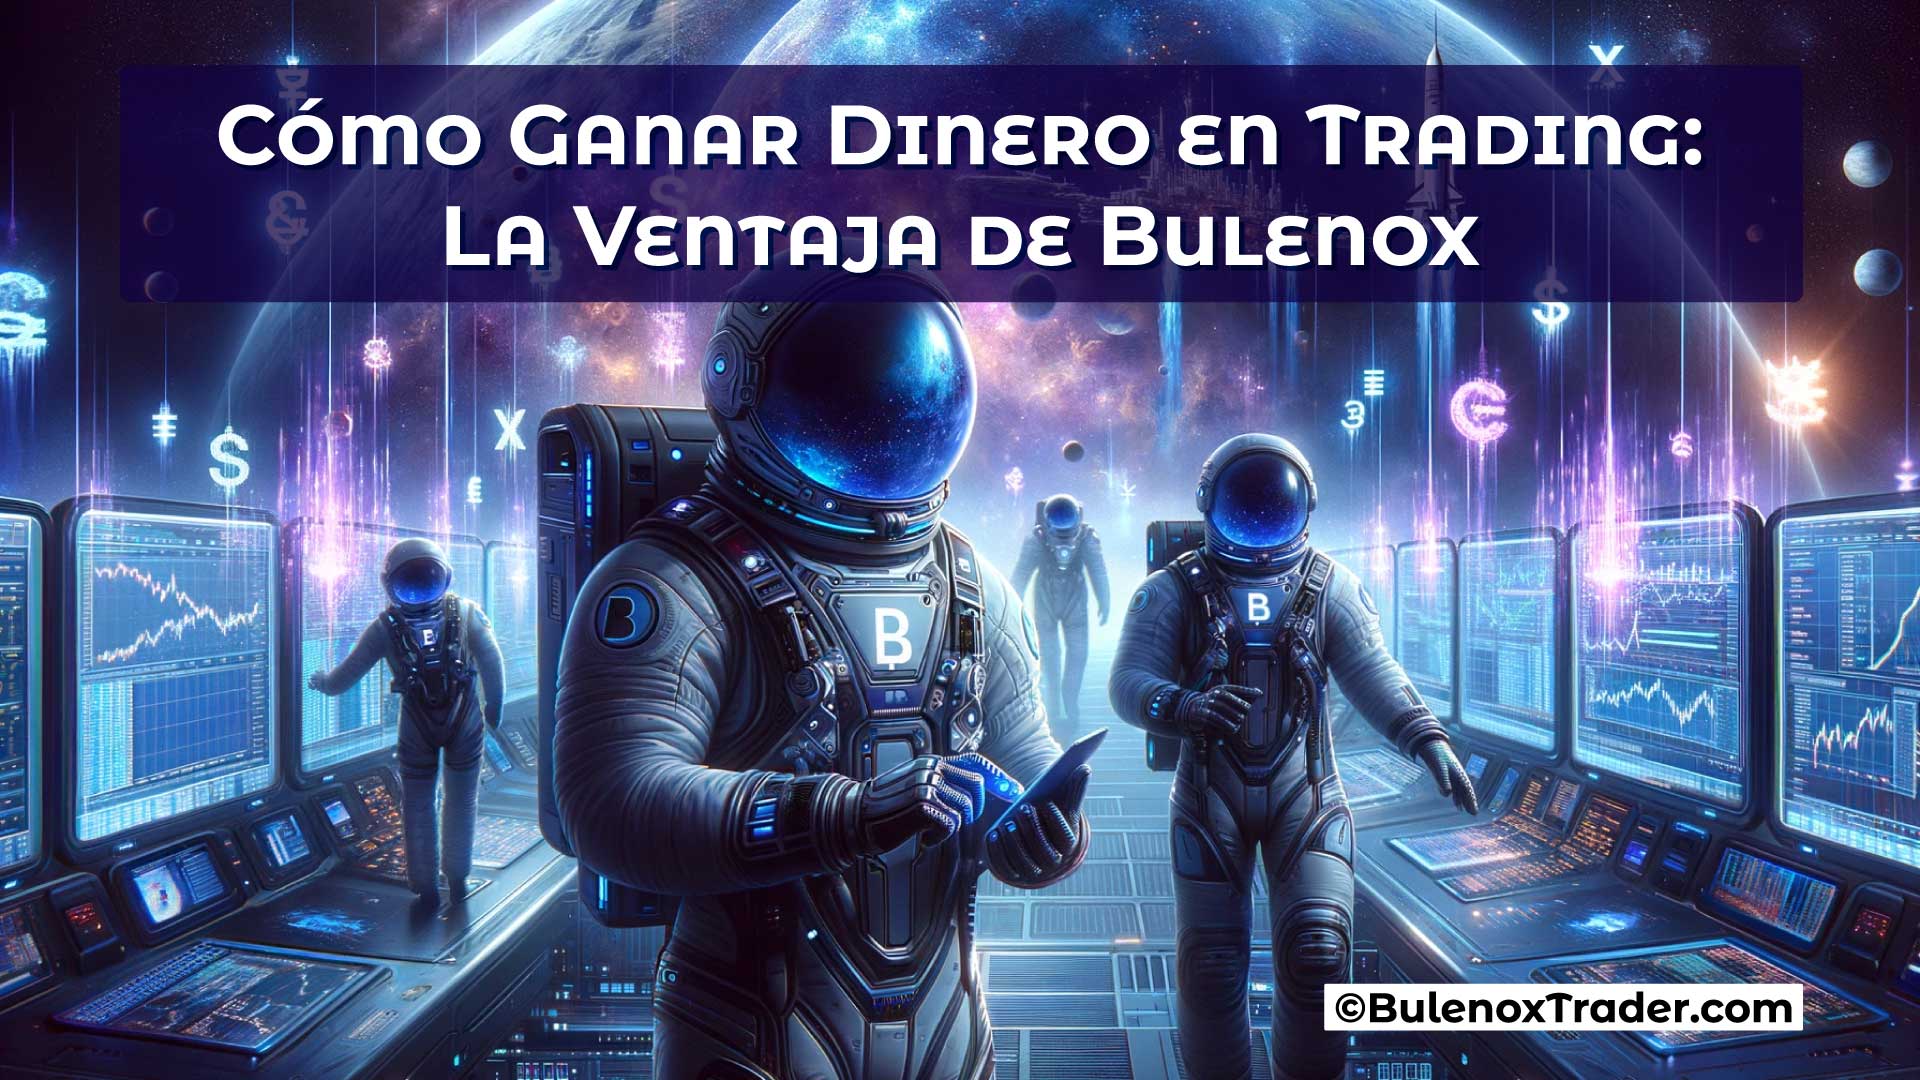 Cómo-Ganar-Dinero-en-Trading-La-Ventaja-de-Bulenox-on-Bulenox-Trader-Website